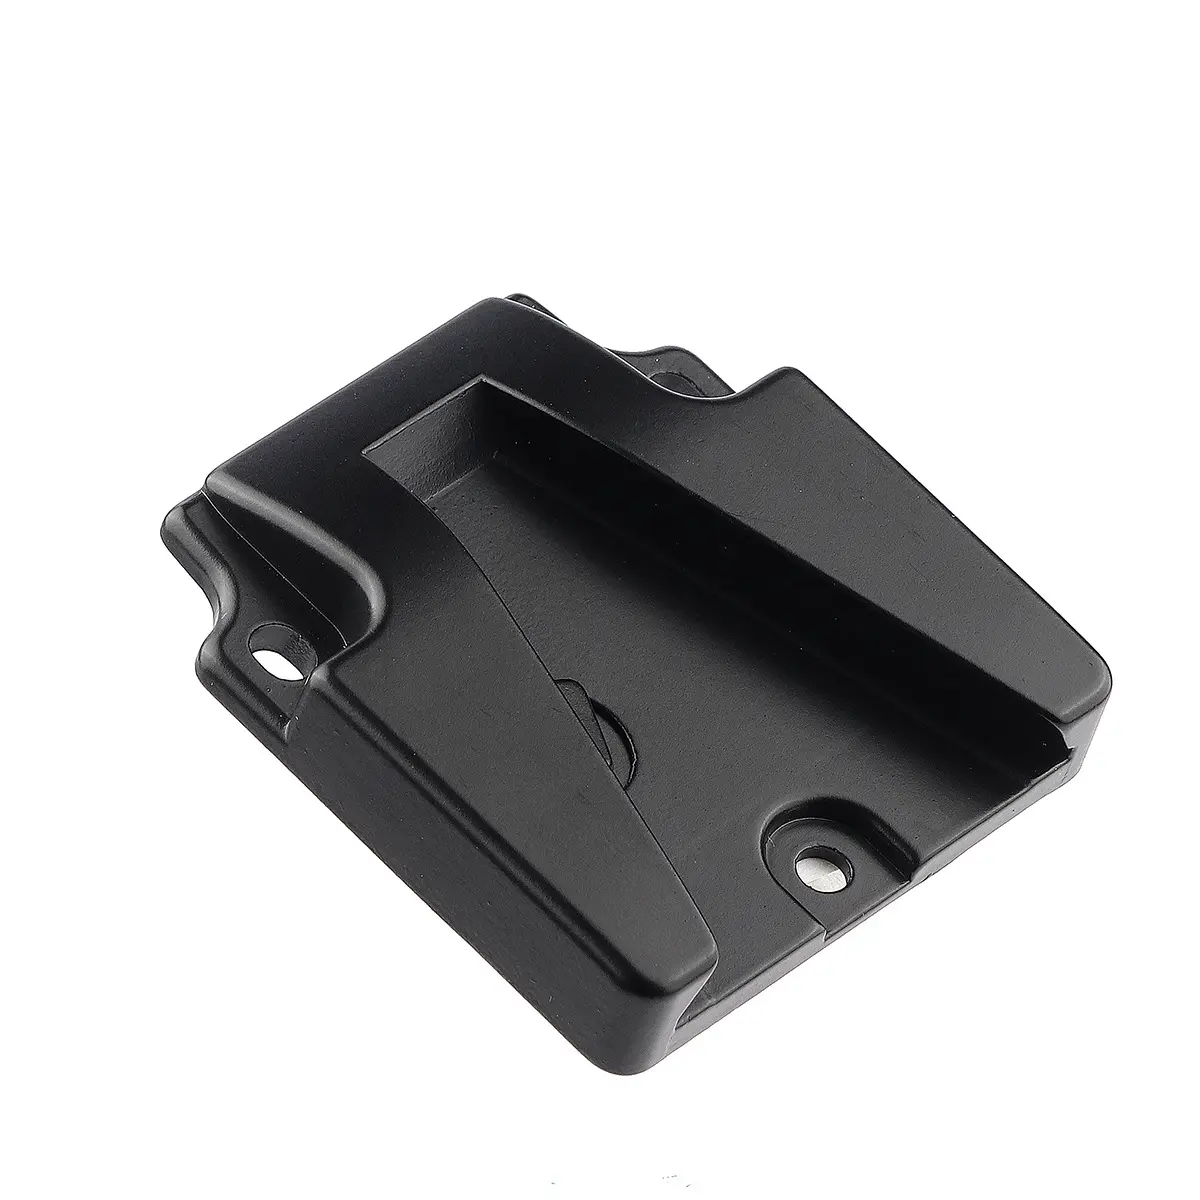 V montaj kilidi pil plakası kamera aksesuarları için Quick Release pil Mini asılı kilit köşebent